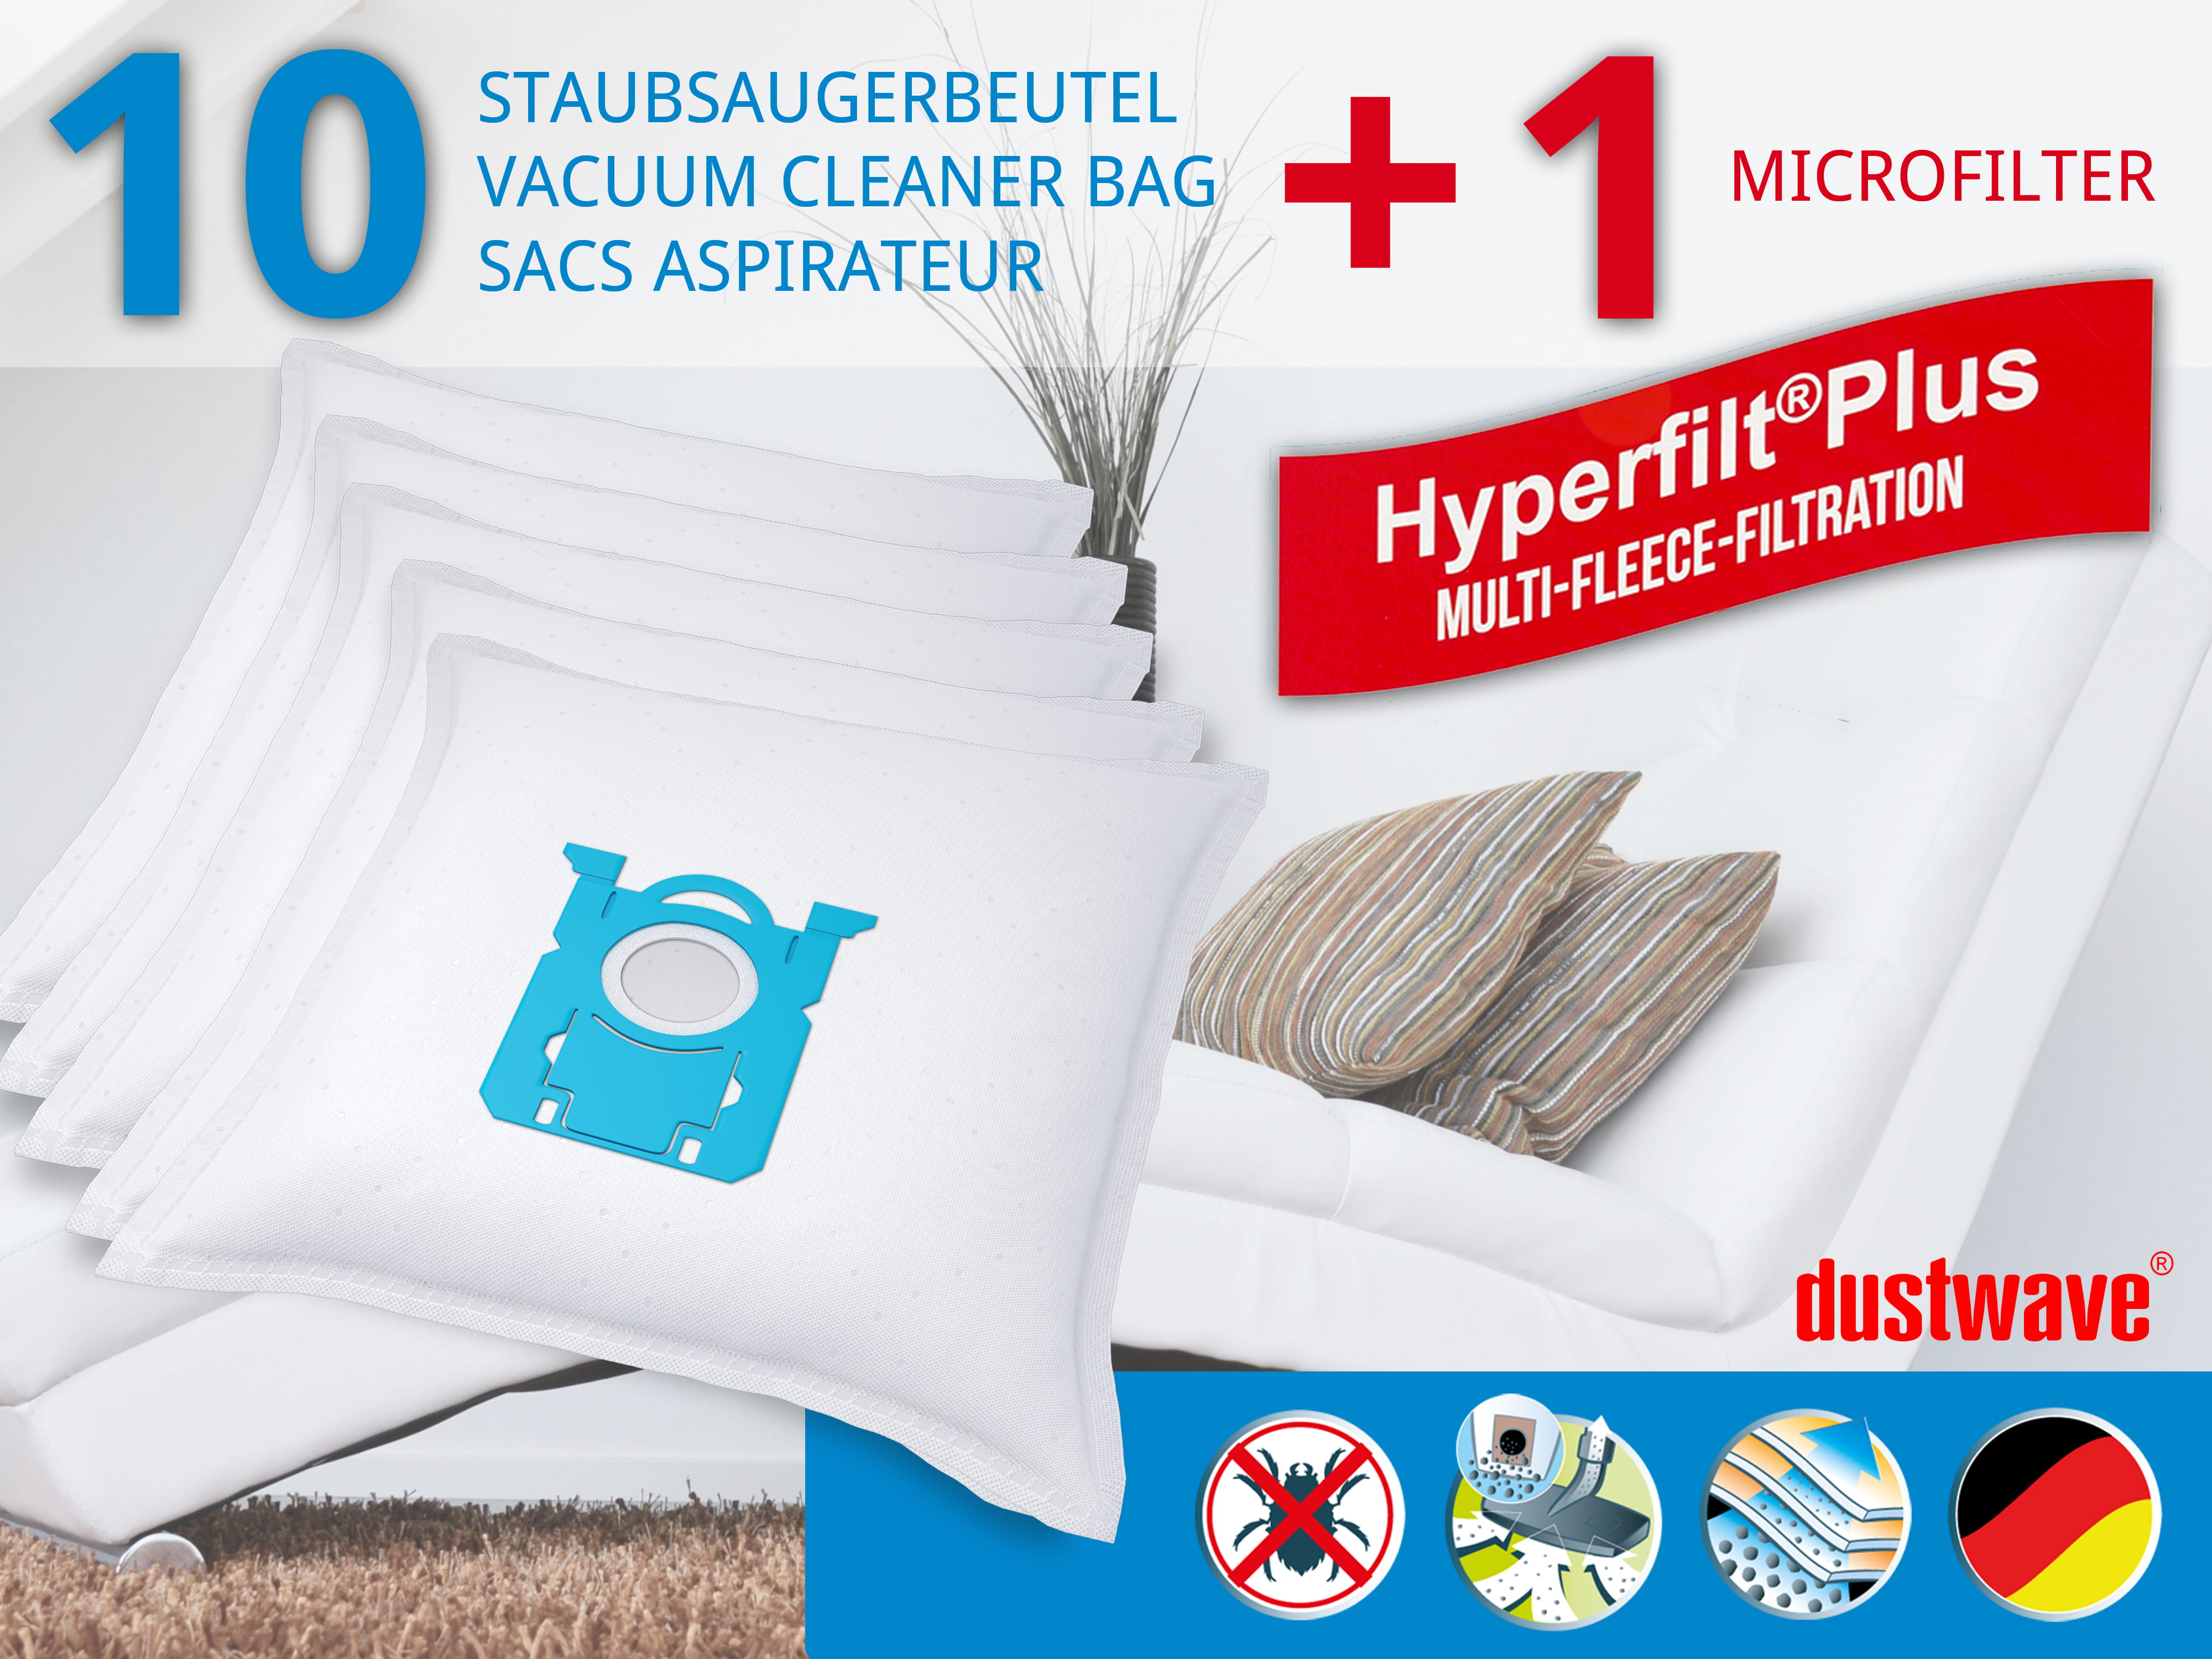 Dustwave® 10 Staubsaugerbeutel für AEG AES 330 CK - hocheffizient, mehrlagiges Mikrovlies mit Hygieneverschluss - Made in Germany